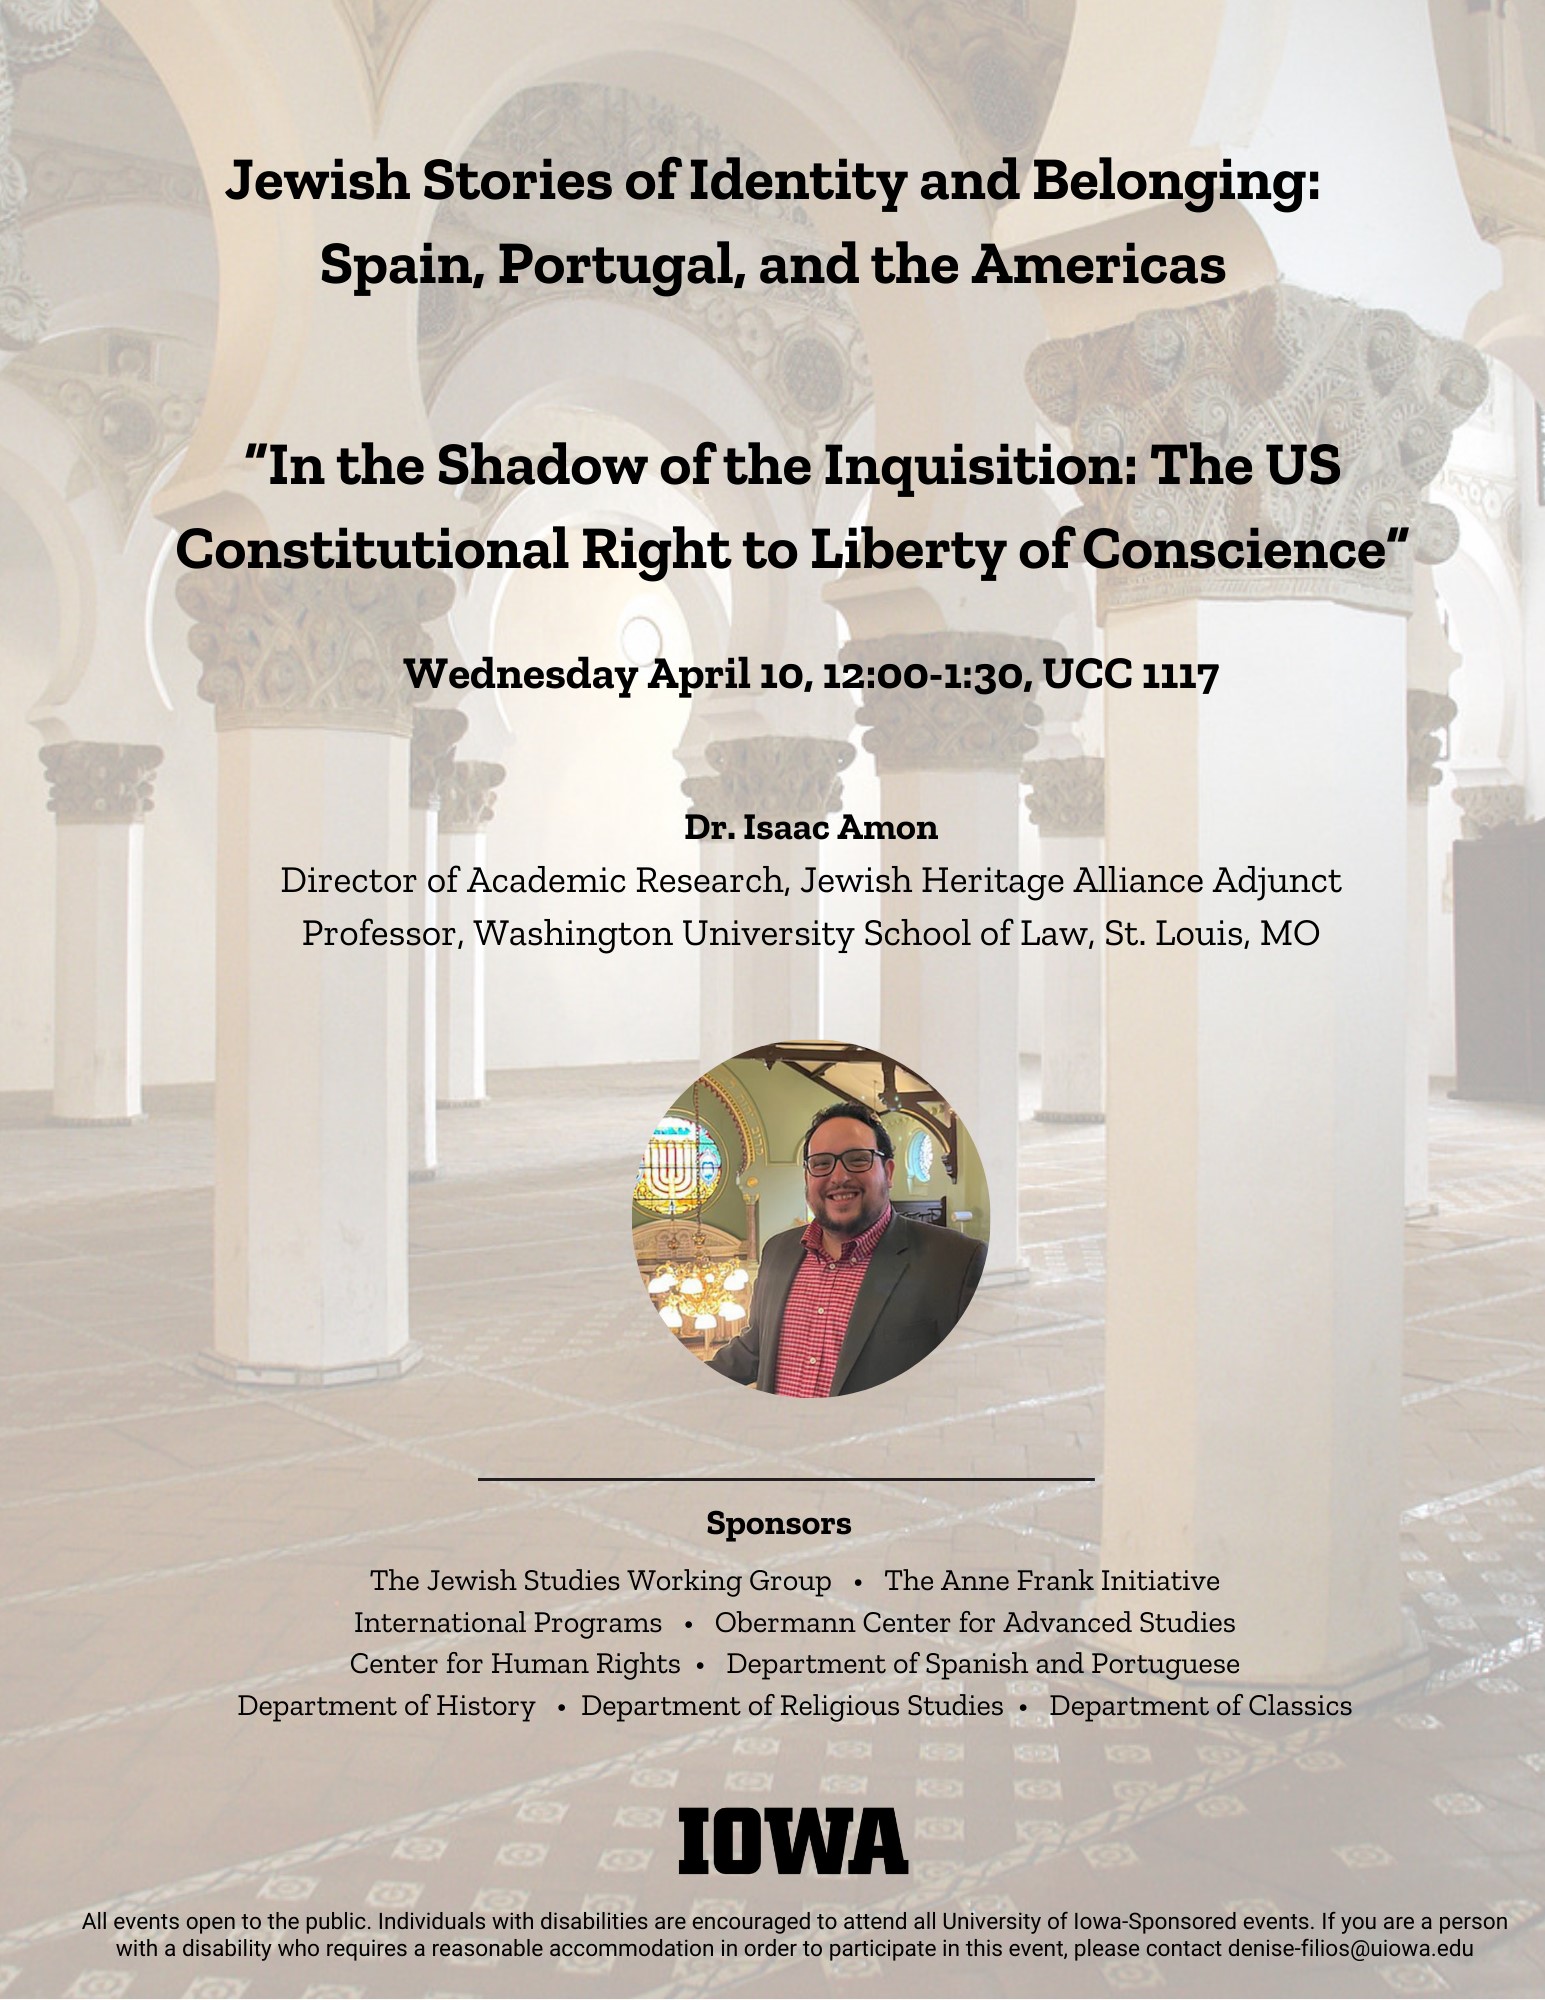 april 10th talk at noon in UCC 1117 on Jewish Identity